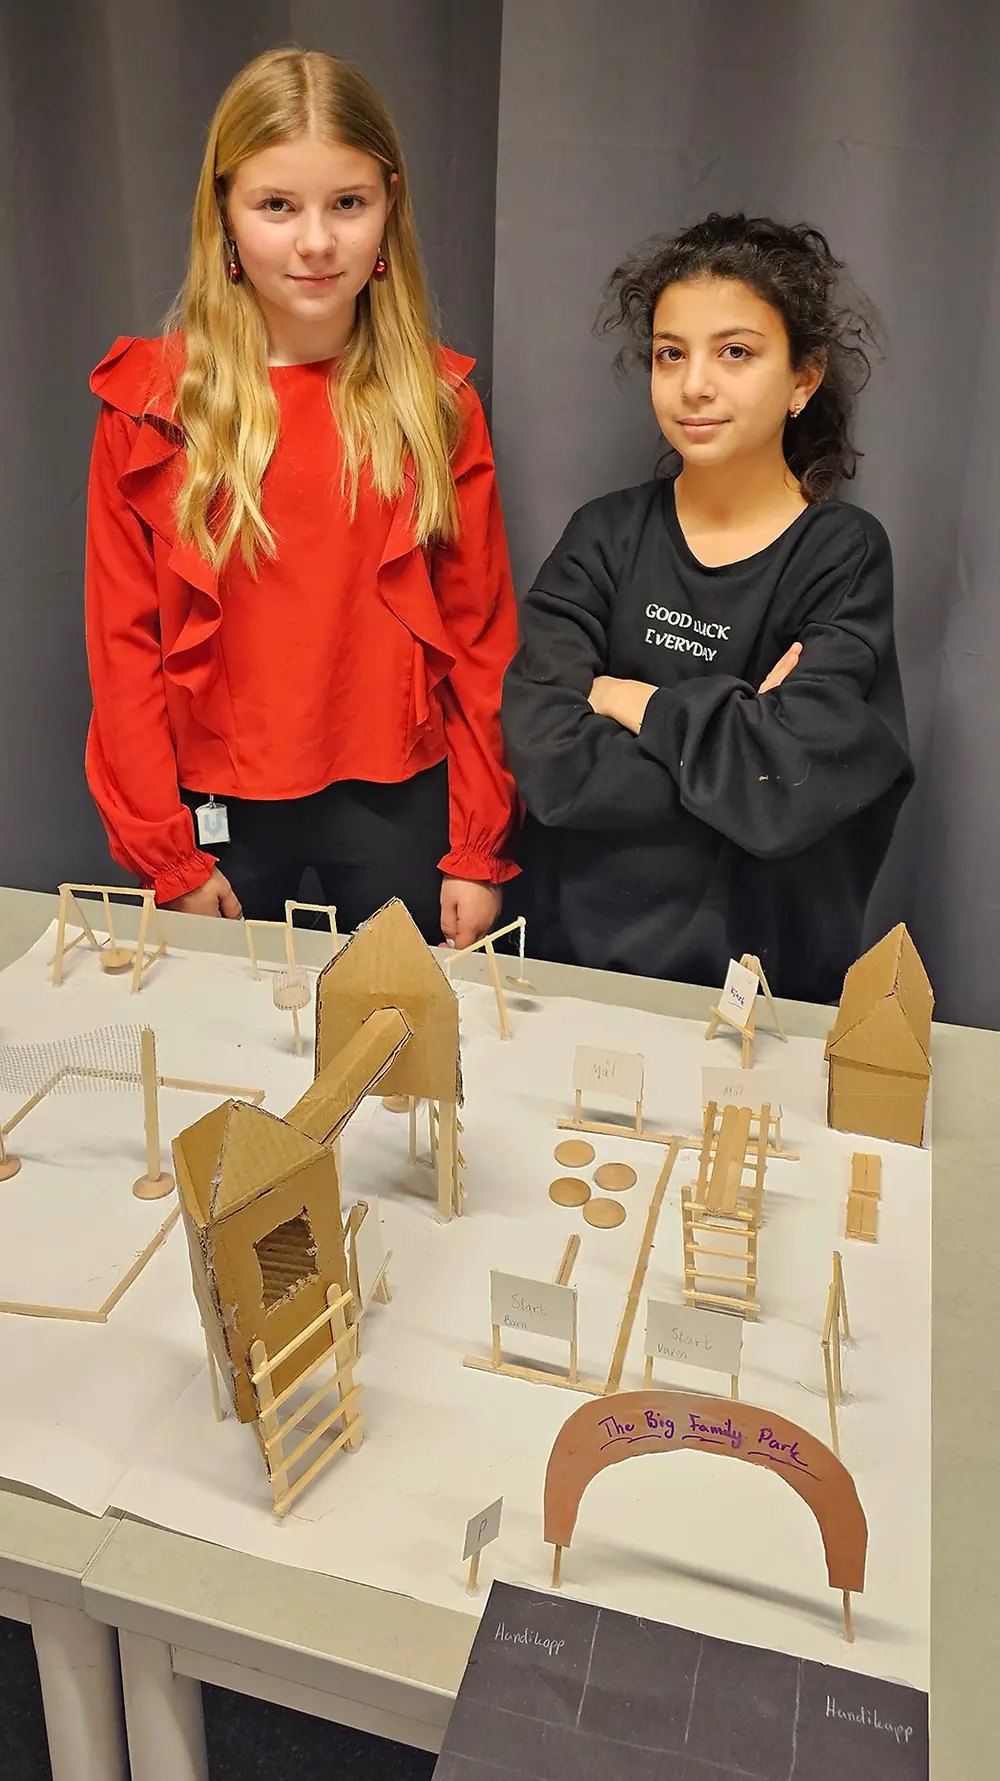 Vega Högkvist och Maria Shafah elever på Älvstranden bildningscentrum.